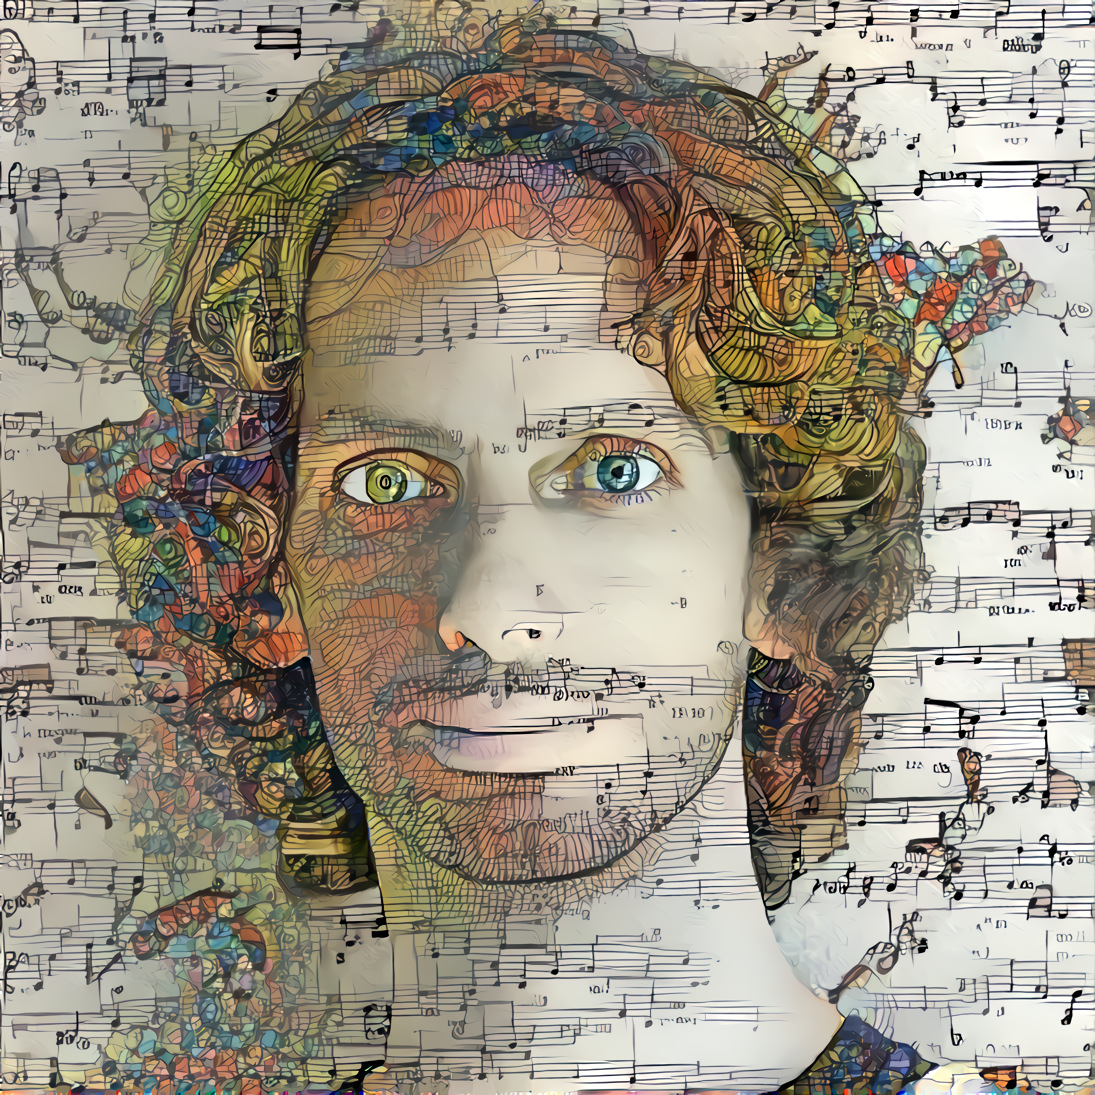 Portrait - the musician